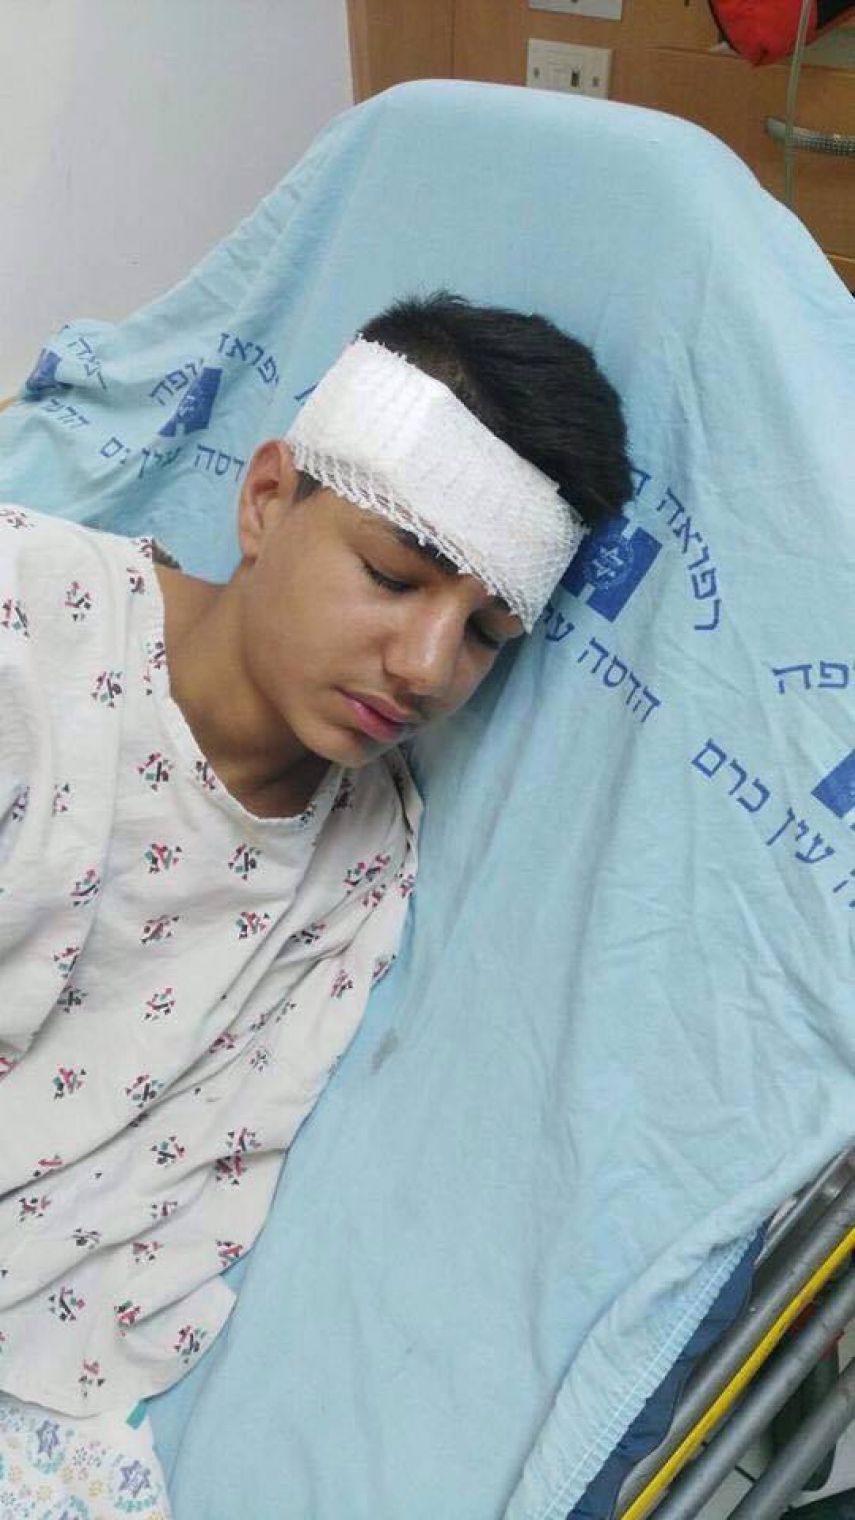 رصاص الاحتلال العشوائي يصيب فتى بكسور ونزيف بالجمجمة